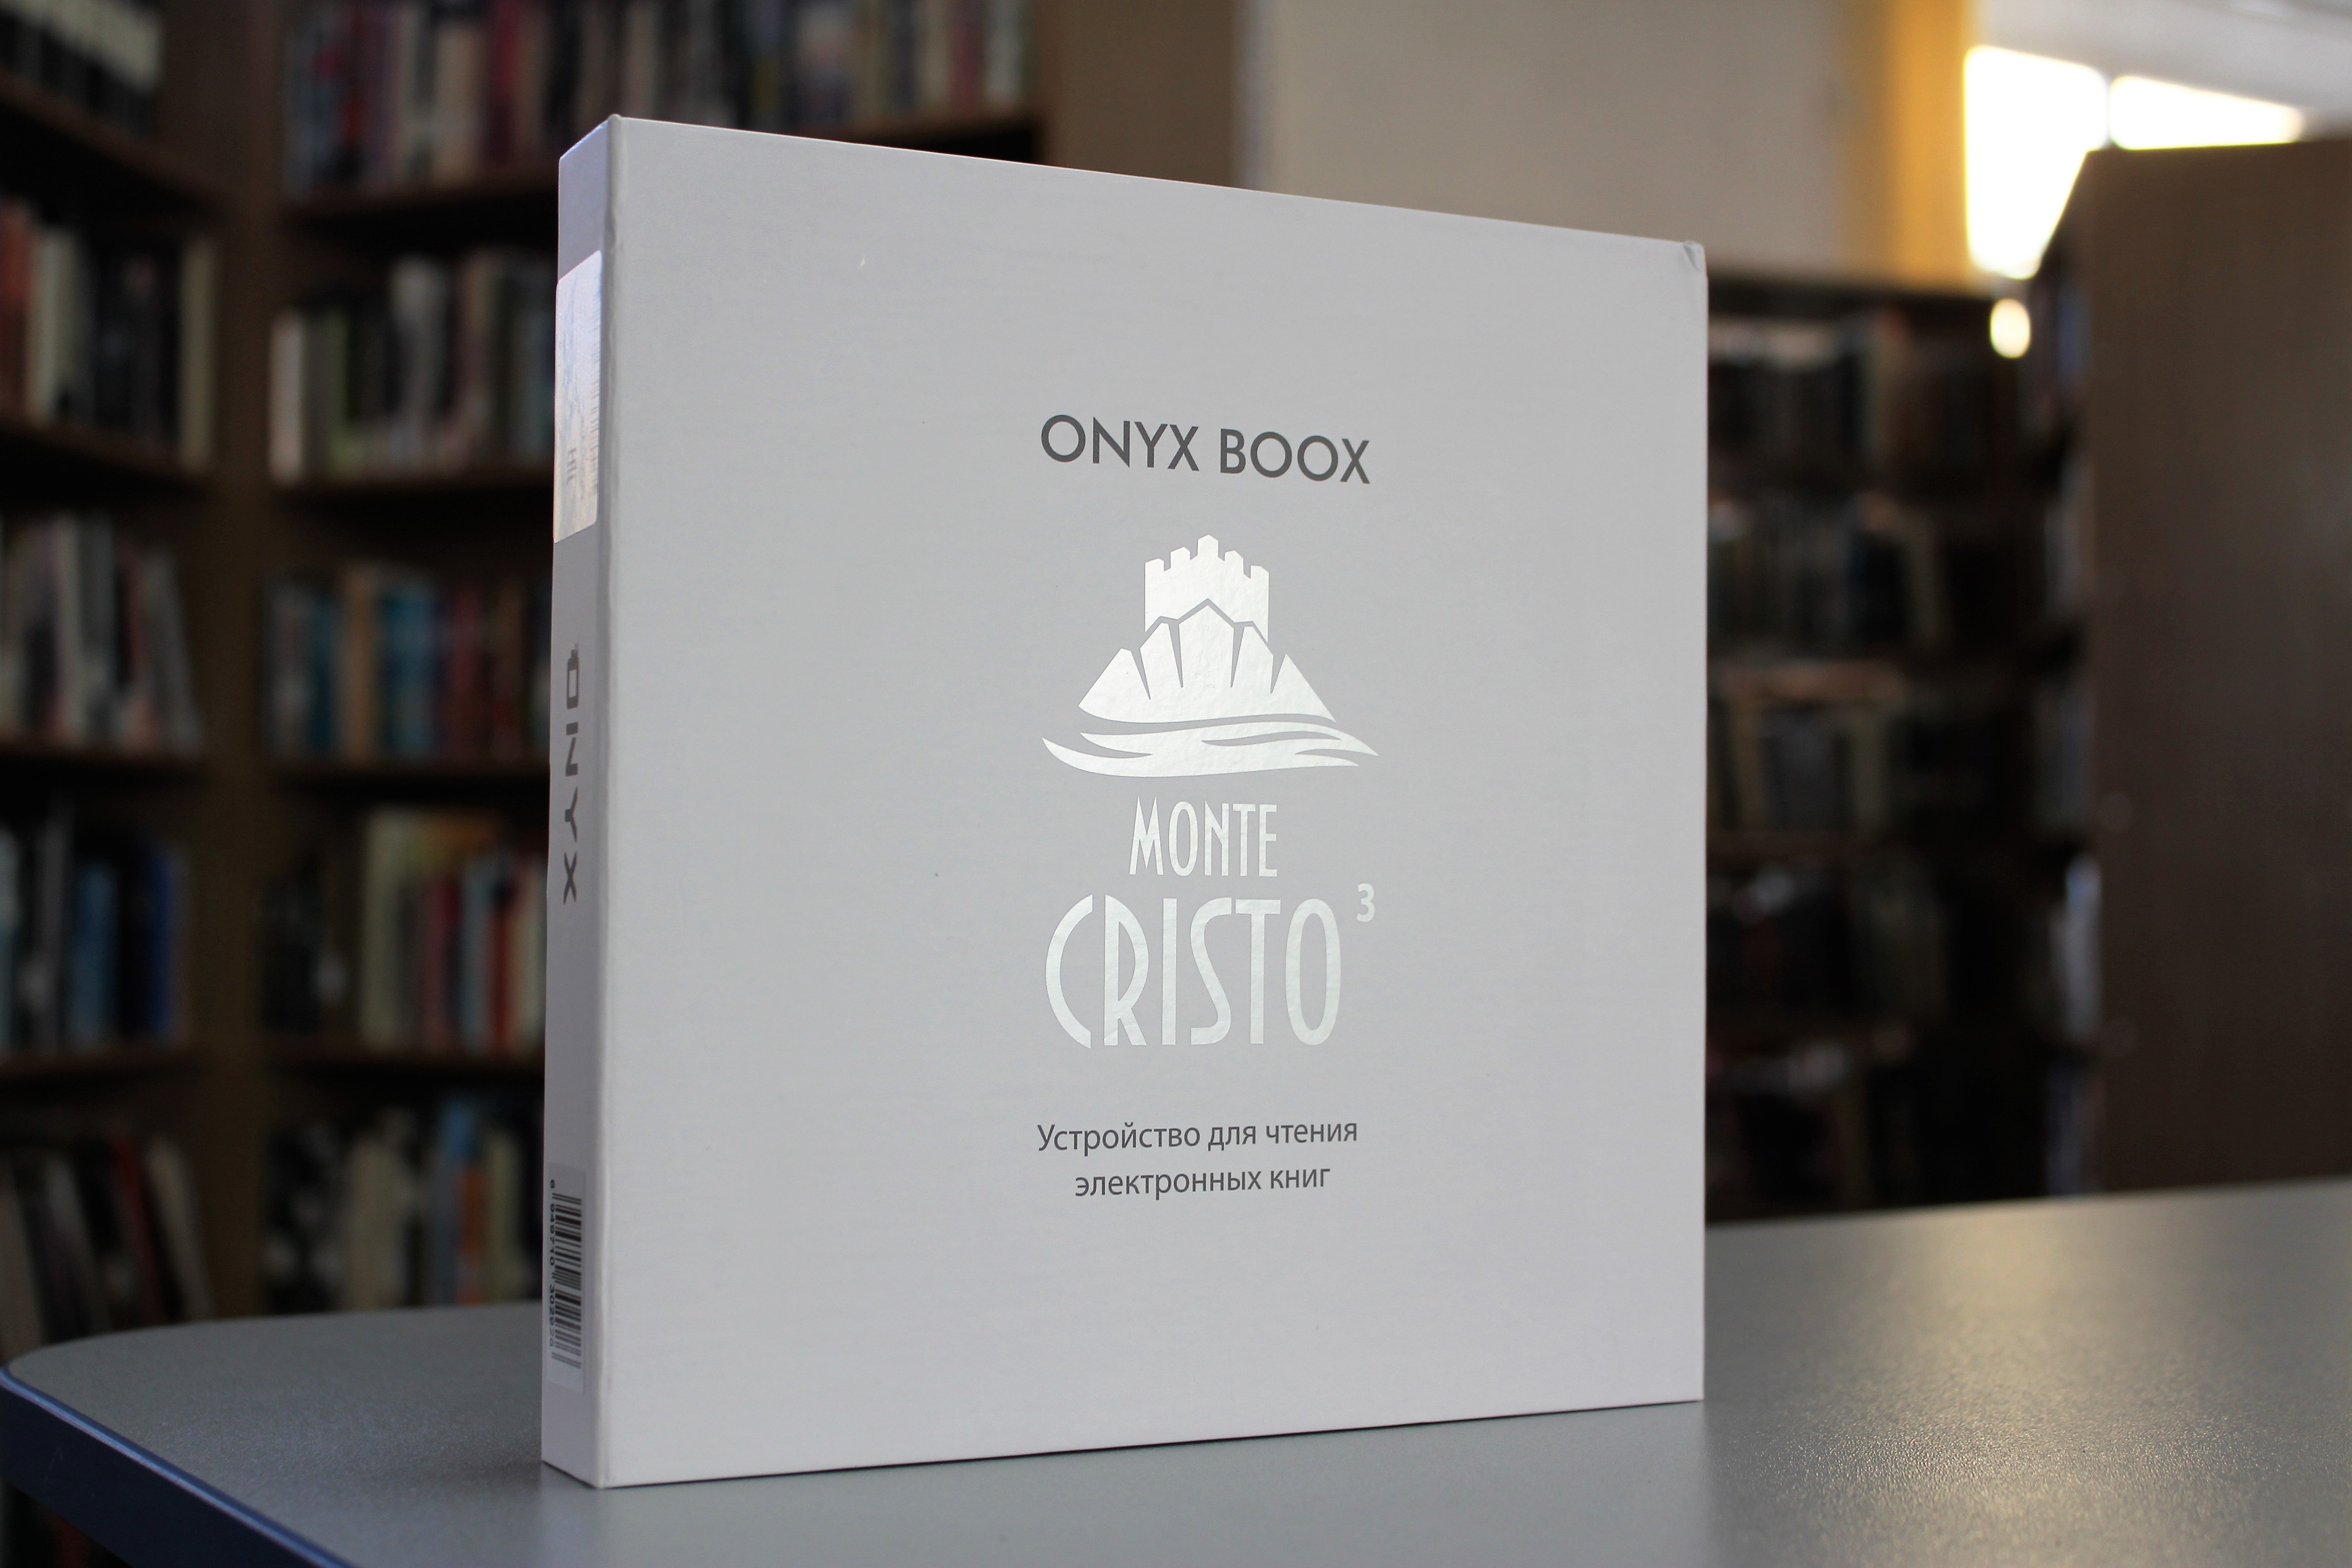 Обзор ONYX BOOX Monte Cristo 3